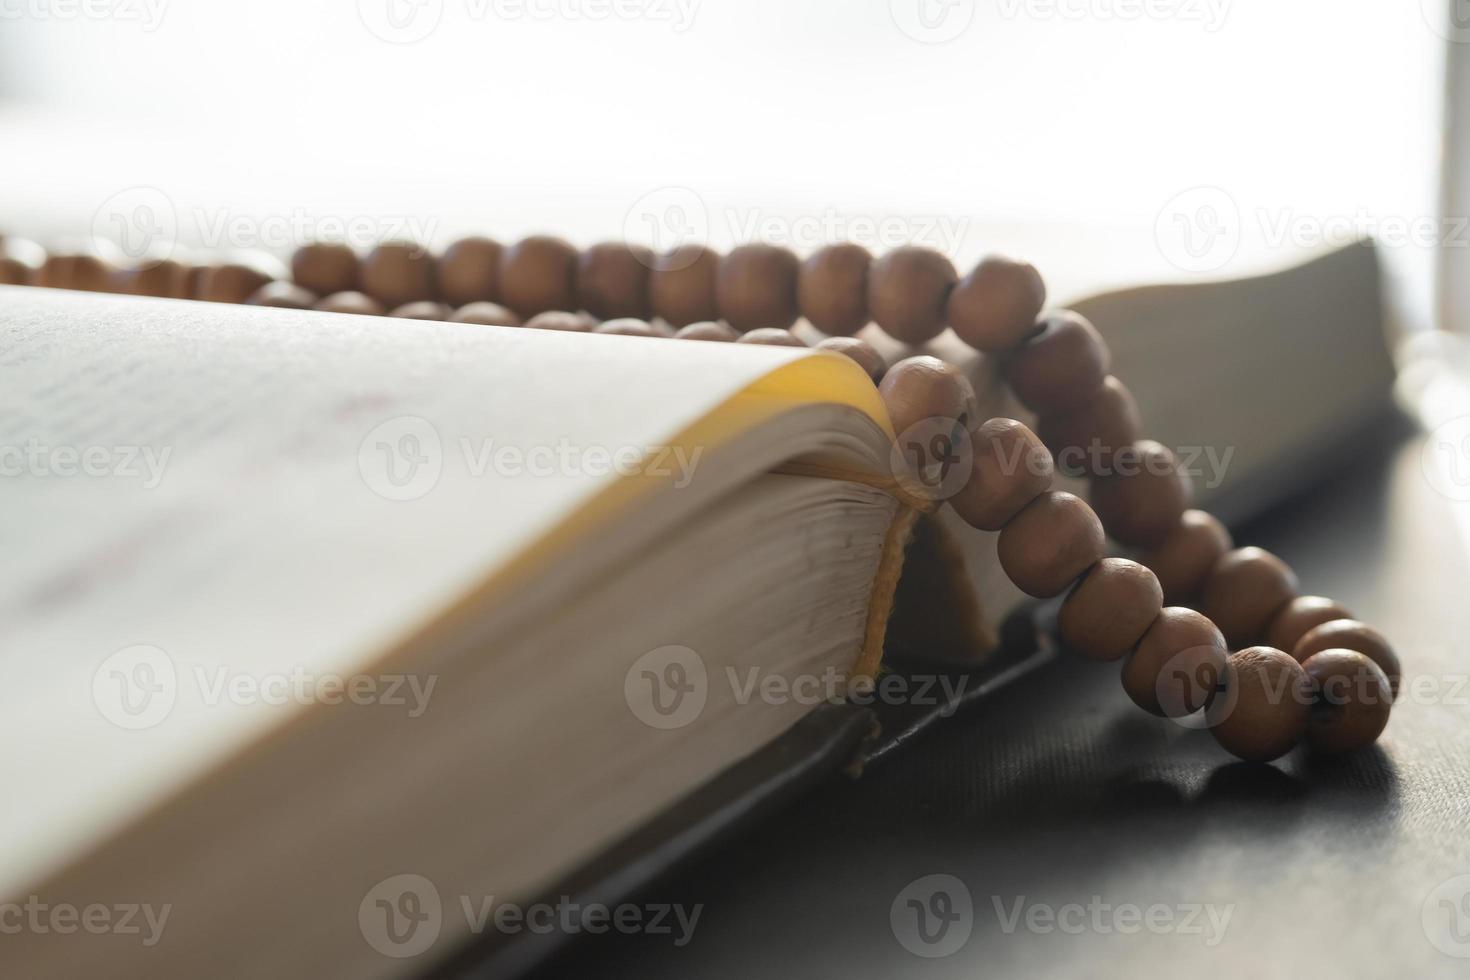 heilig boek en gebed kralen voor moslims. concept van de Koran en gebed kralen foto